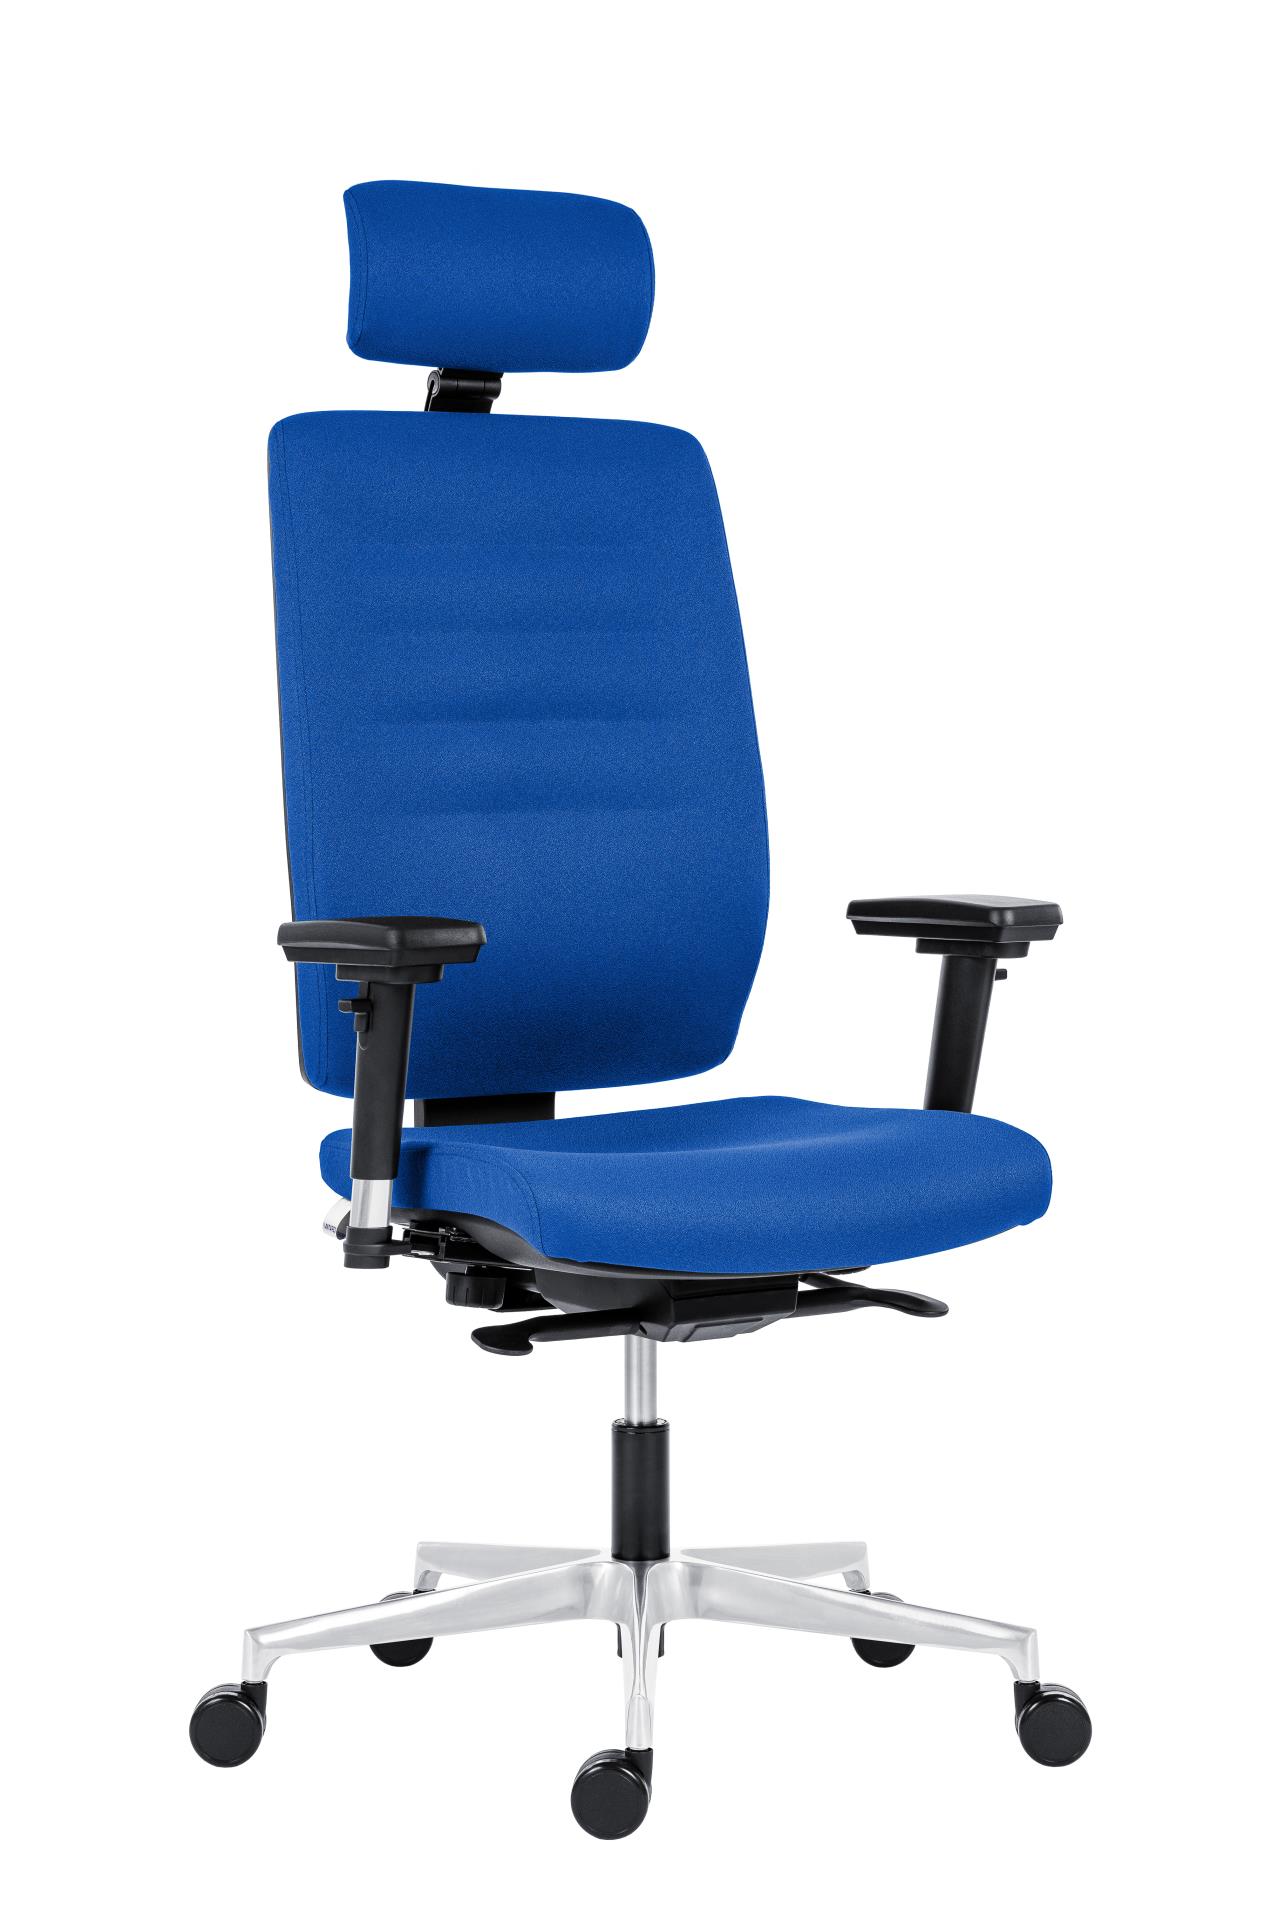 Antares Kancelářská židle Eclipse - s podhlavníkem, synchronní, modrá